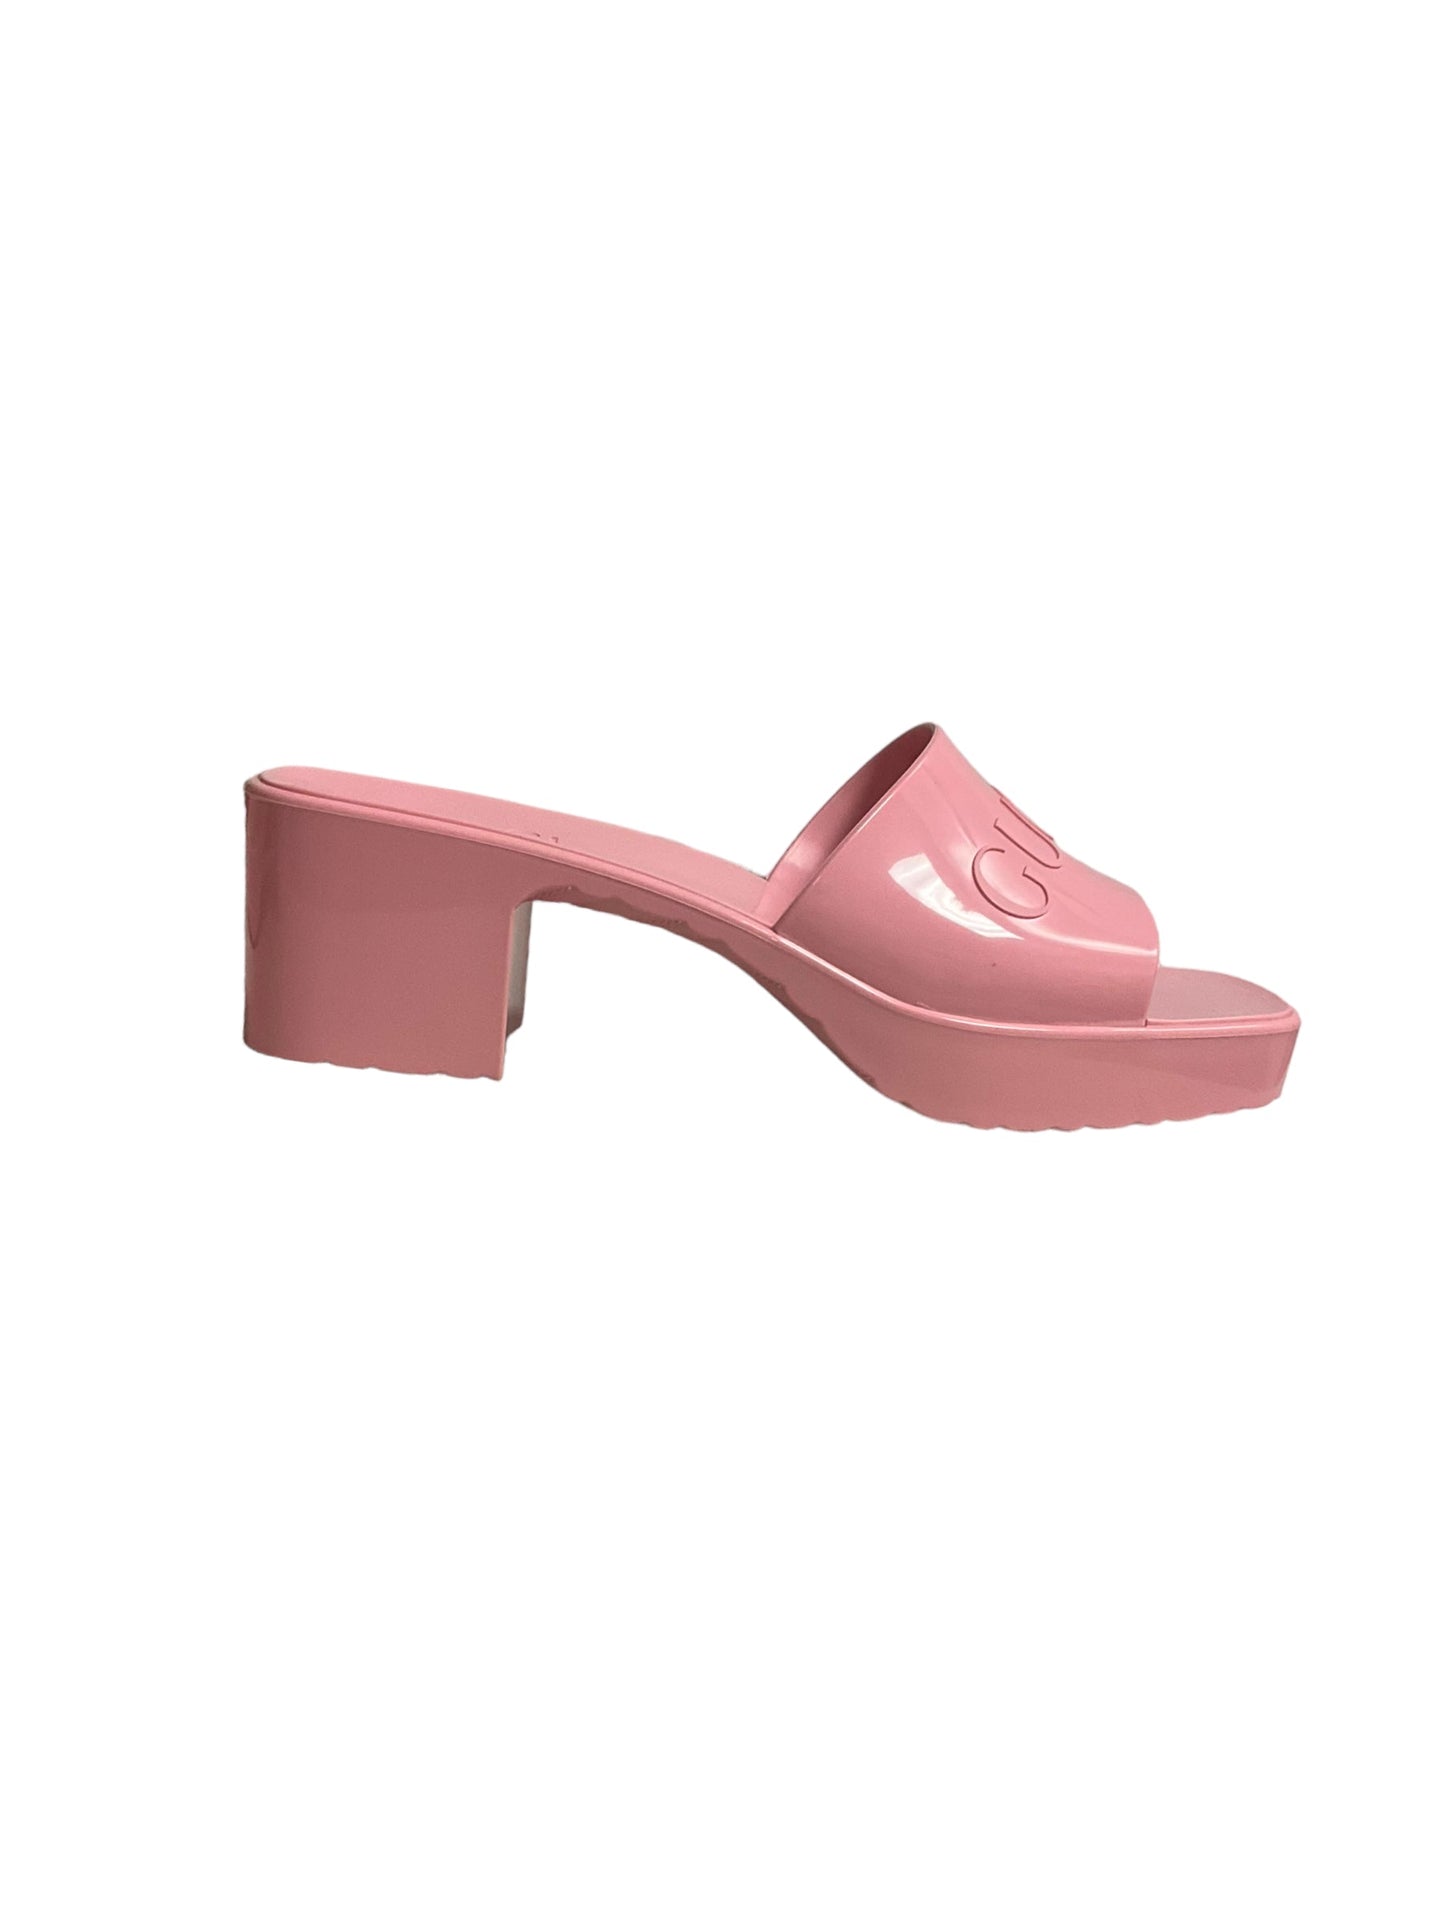 Pink Sandals Luxury Designer Gucci, Size 7.5